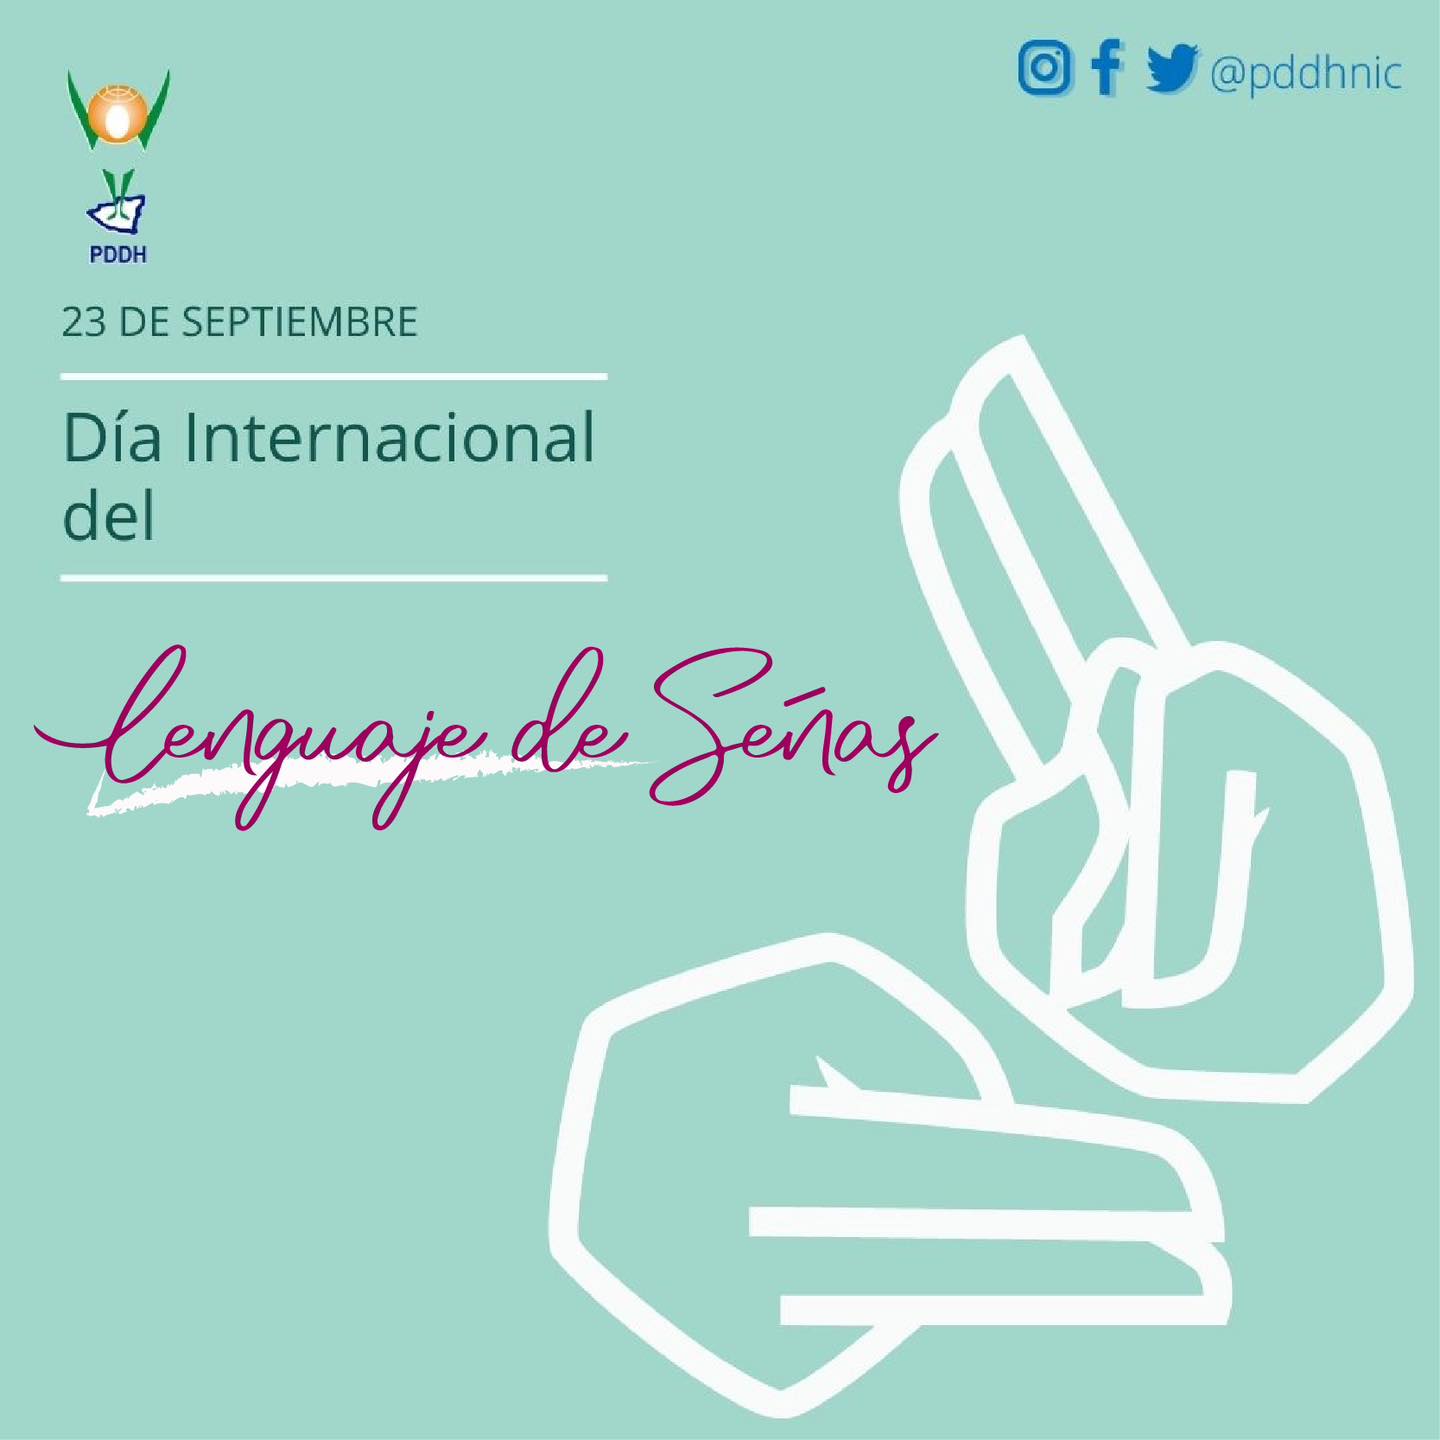 Día Internacional del Lenguaje de Señas.